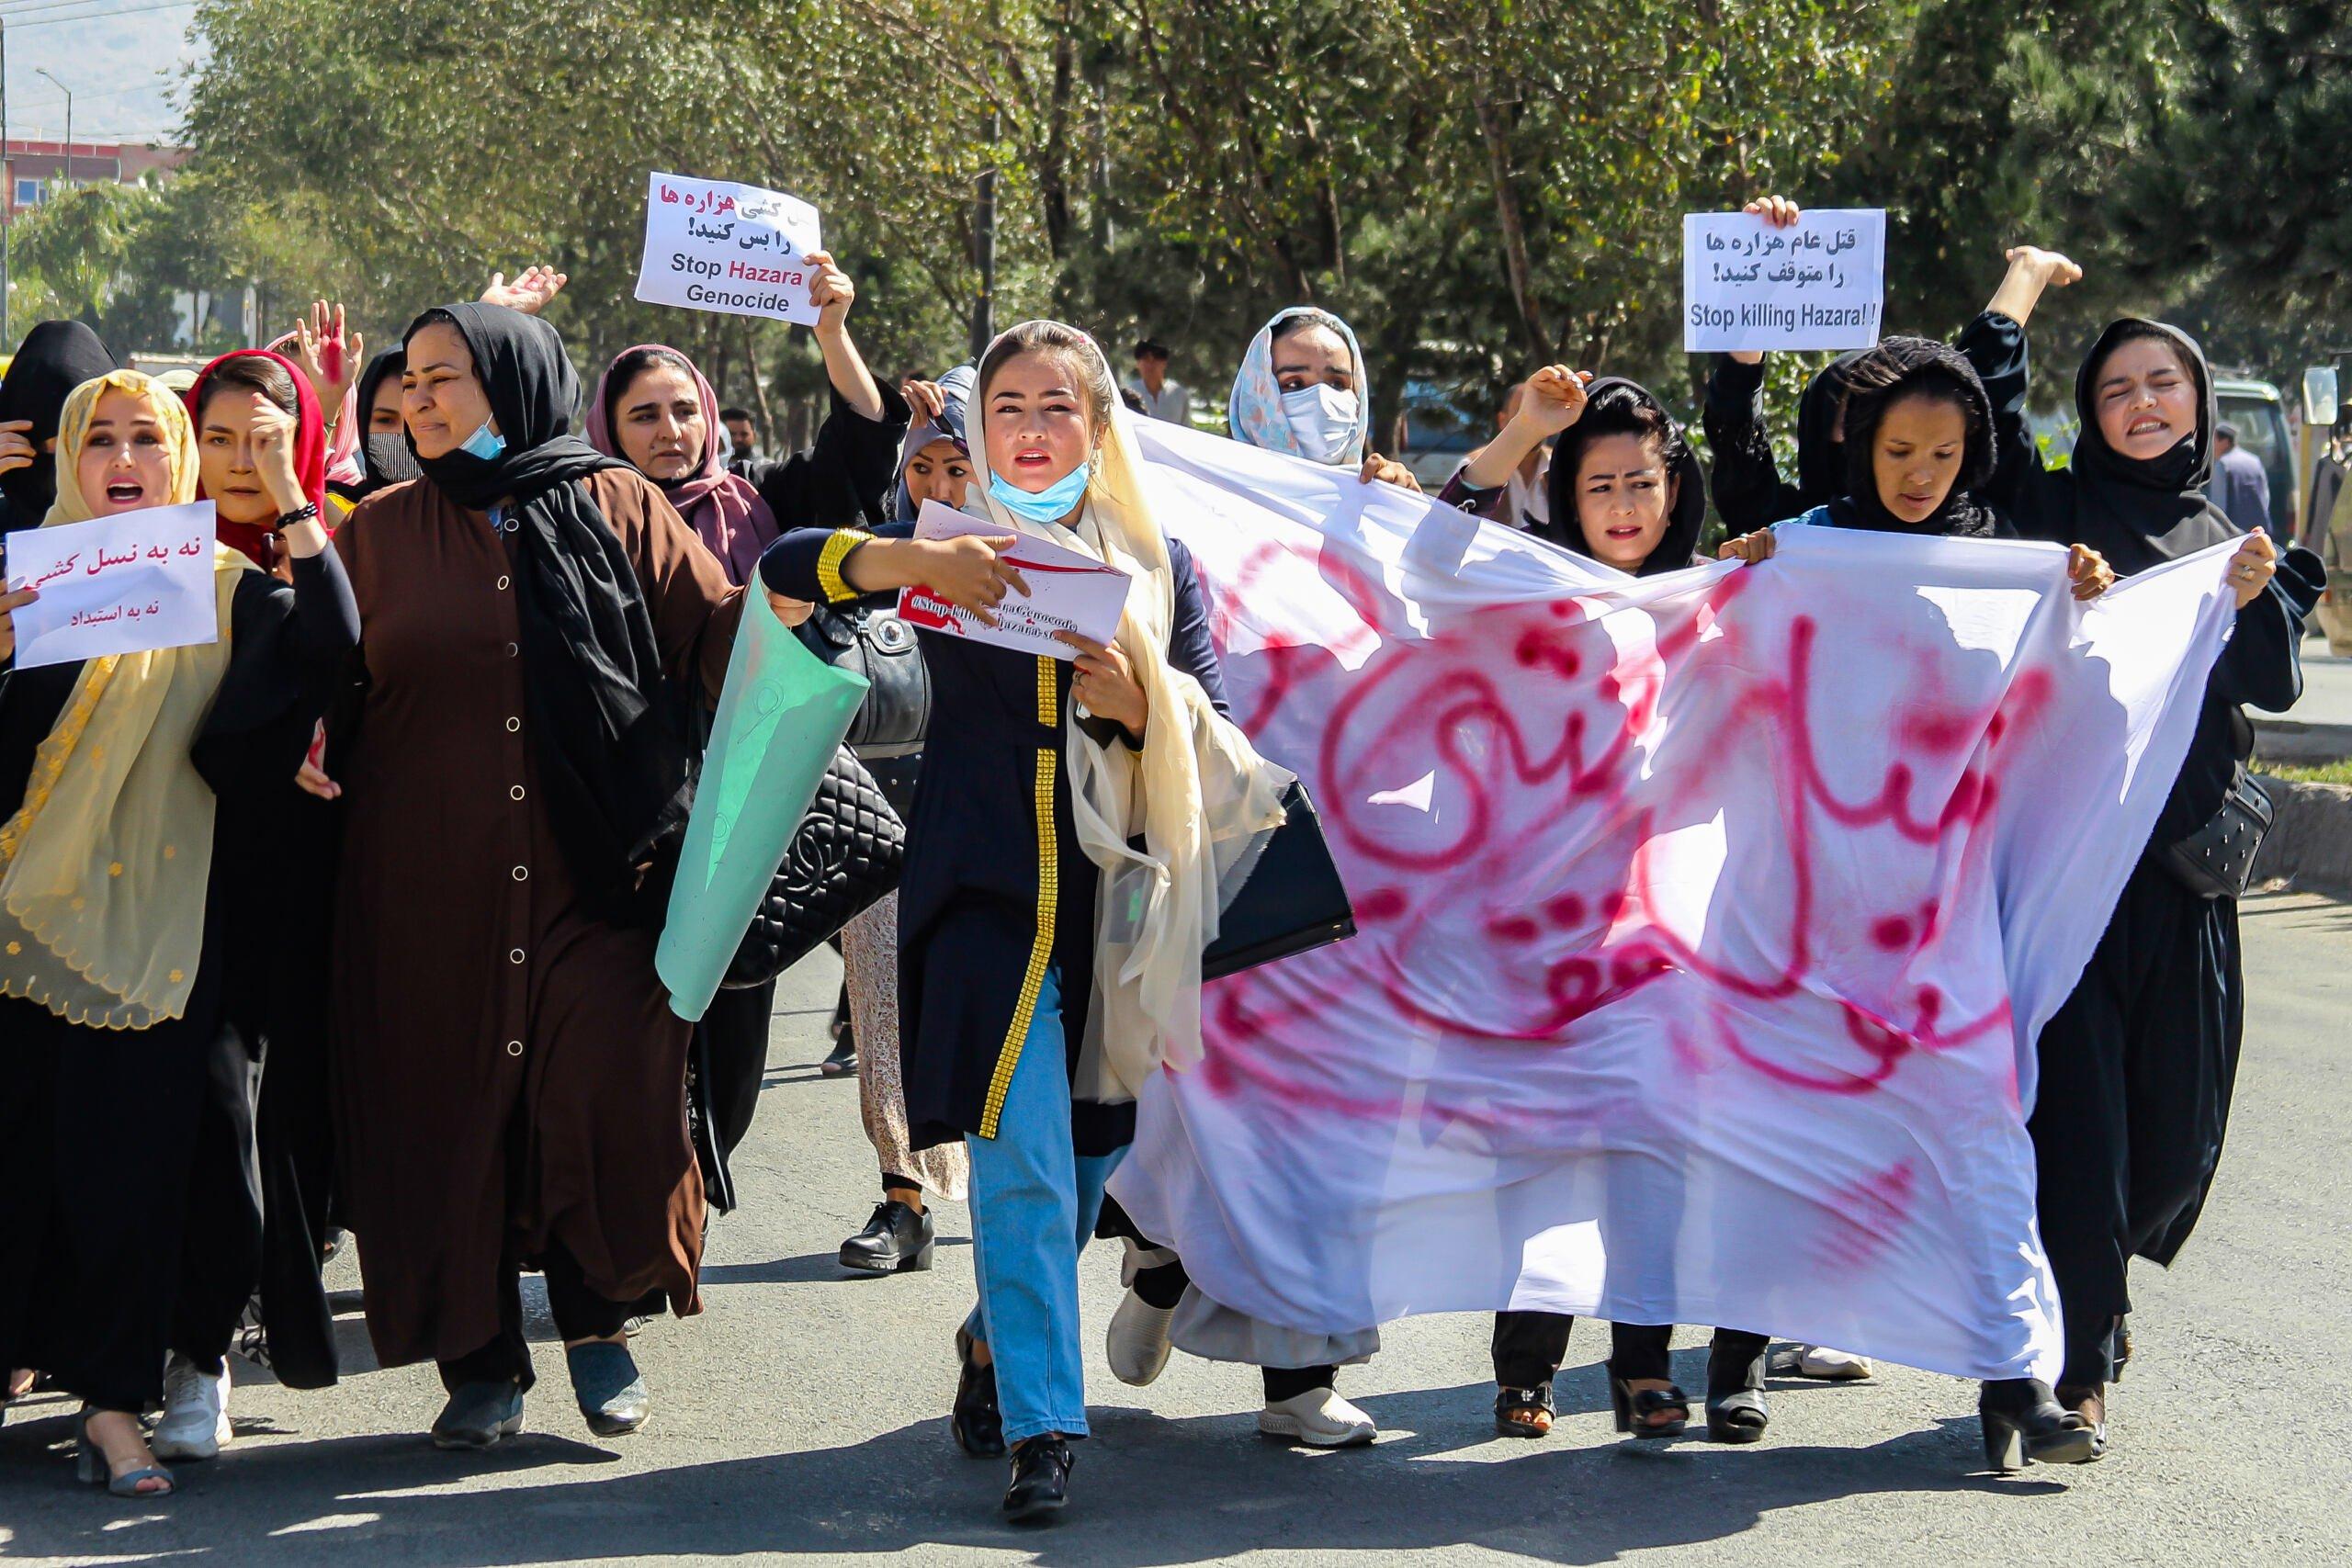 Kobiety ubrane w ciemne szaty i hidżaby protestują w Kabulu z transparentem wymalowanym na białym prześcieradle